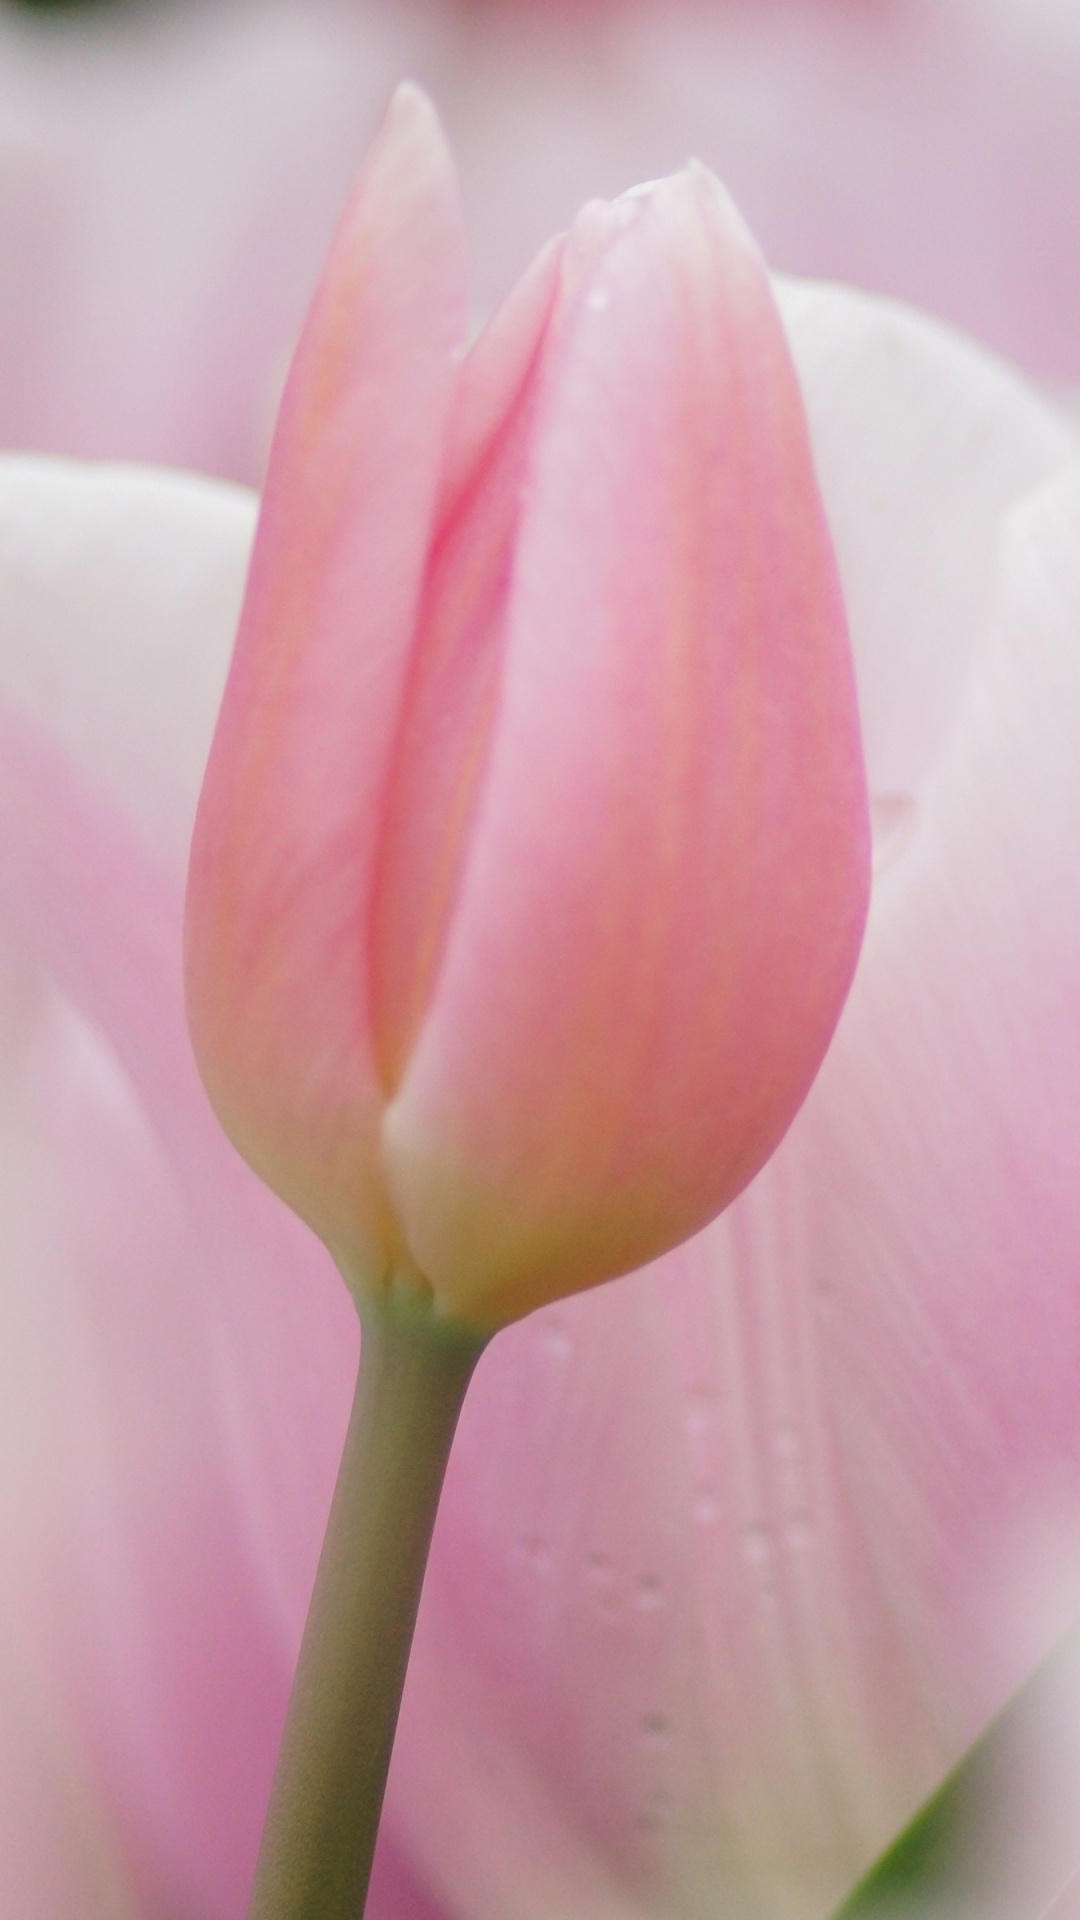 Tulipe Rose en Fleurs Pendant la Journée. Wallpaper in 1080x1920 Resolution